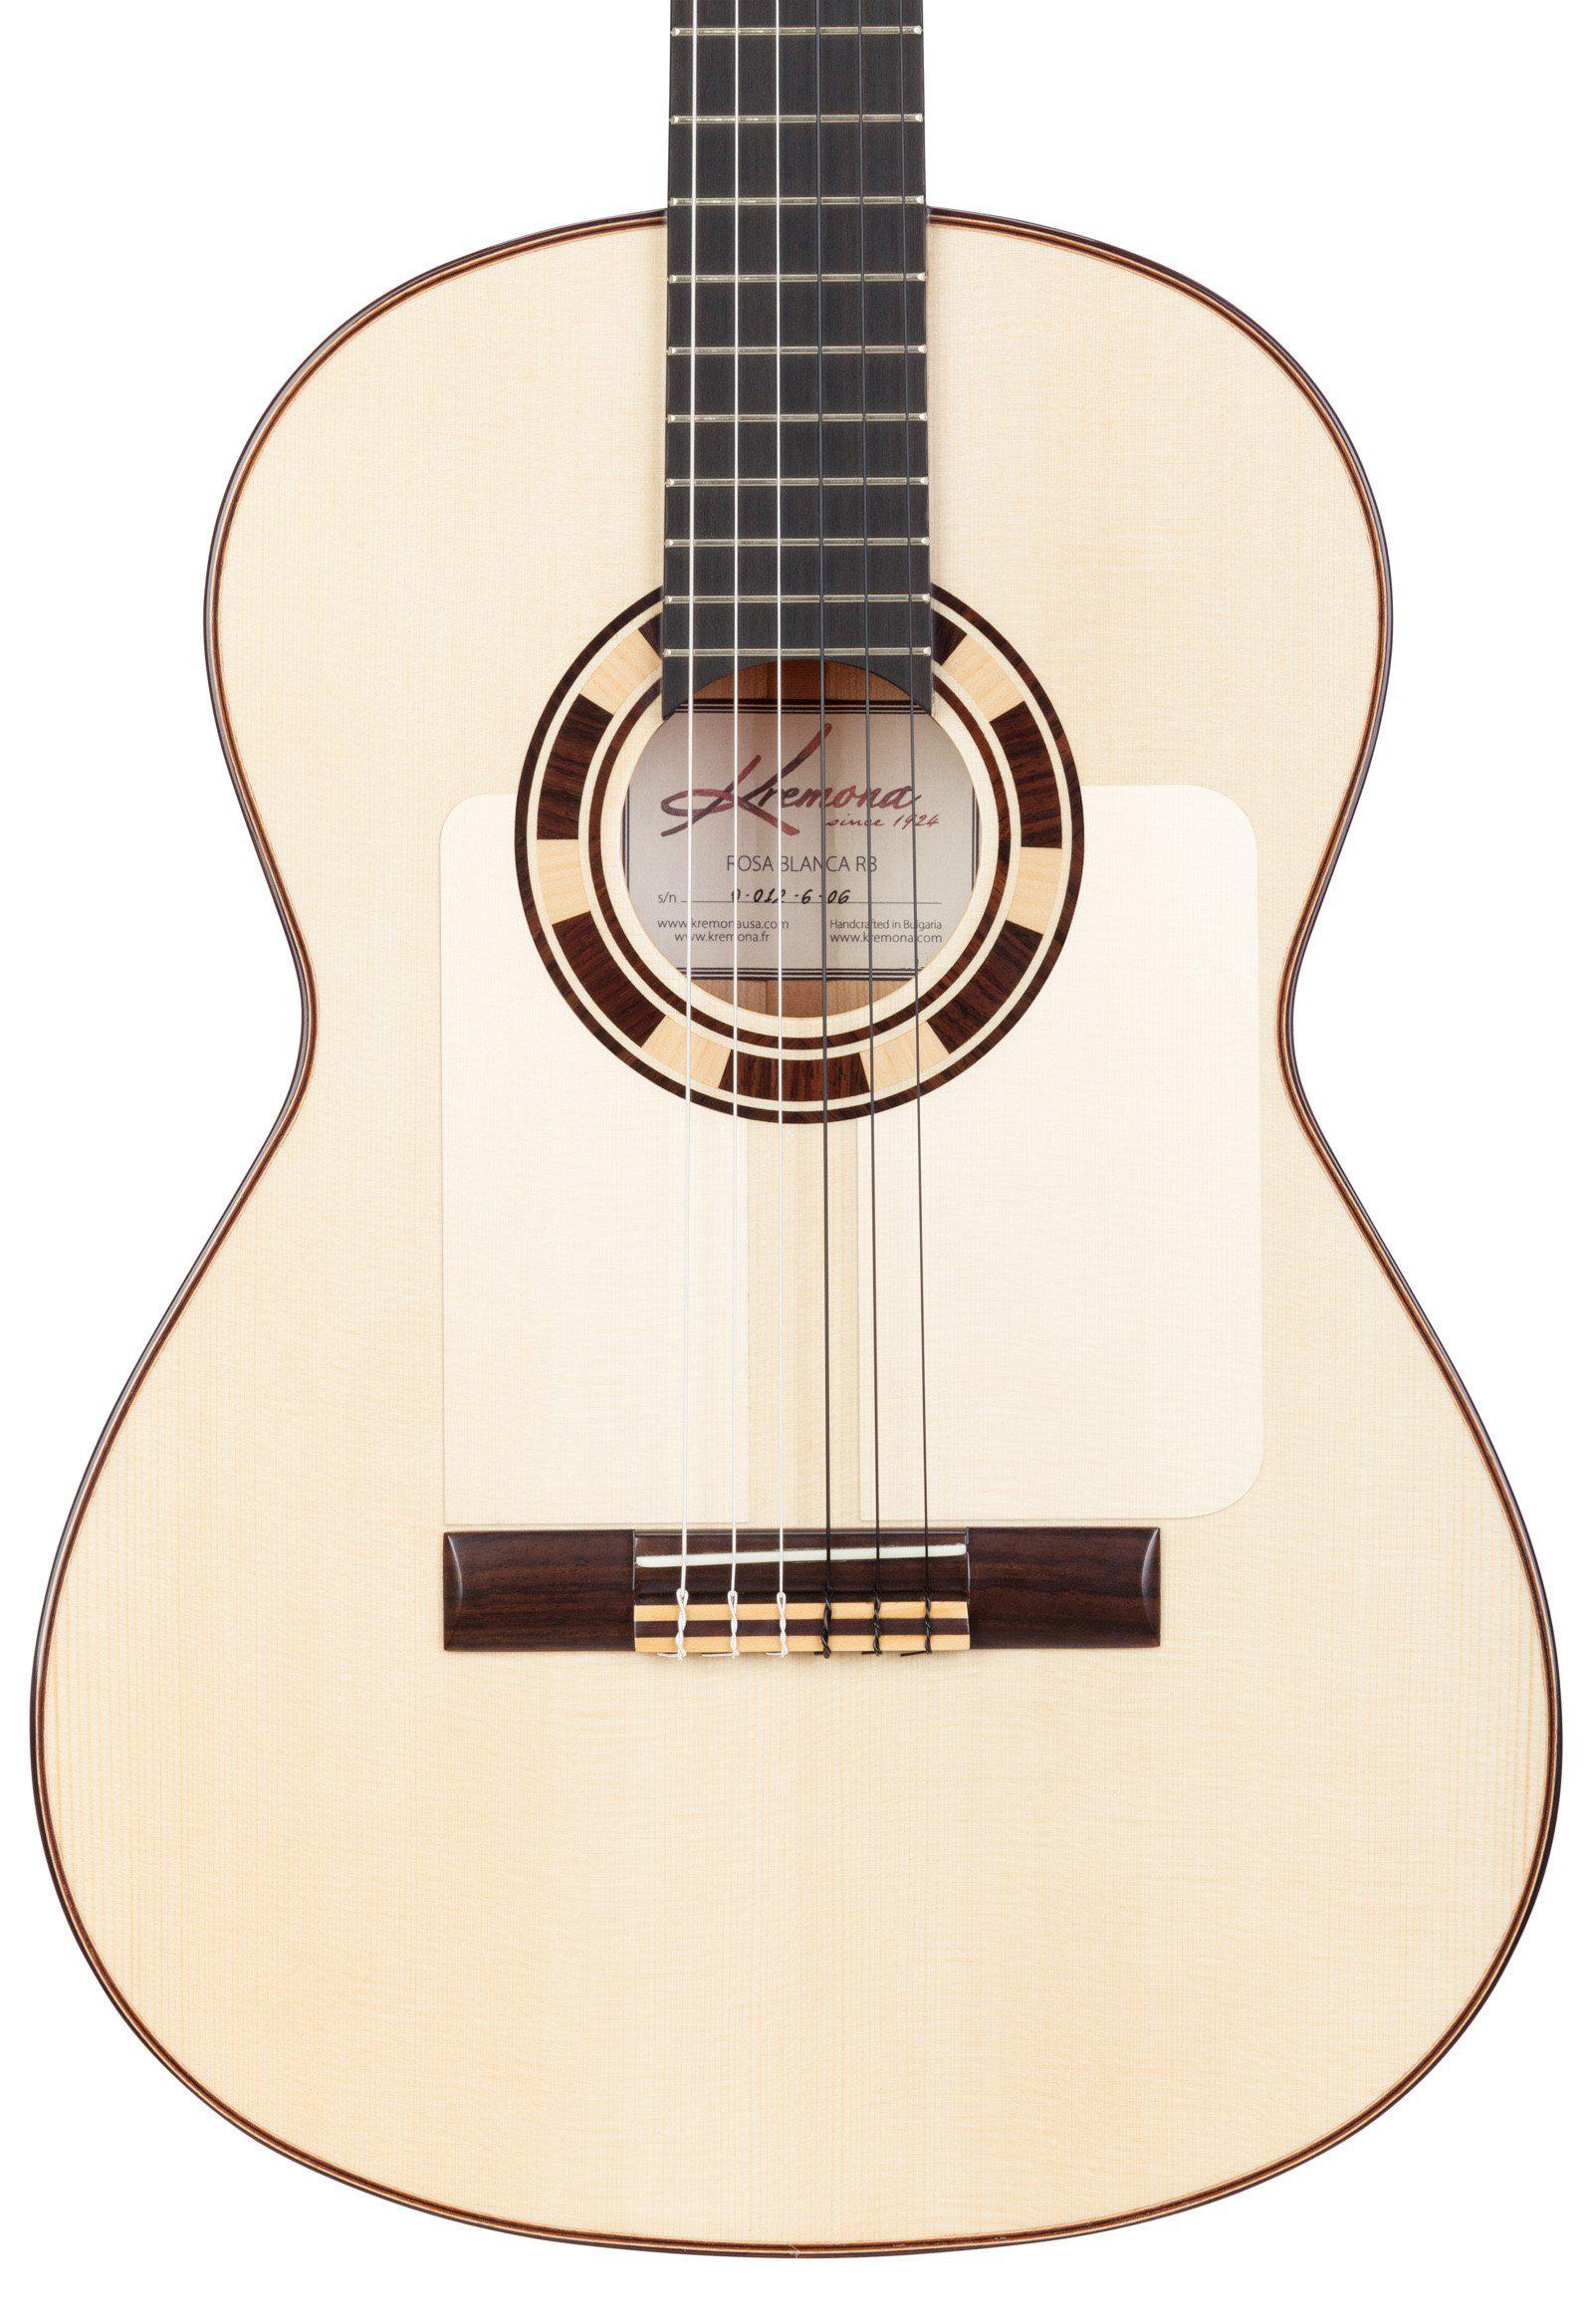 Kremona Rosa Blanca Flamenco Guitar